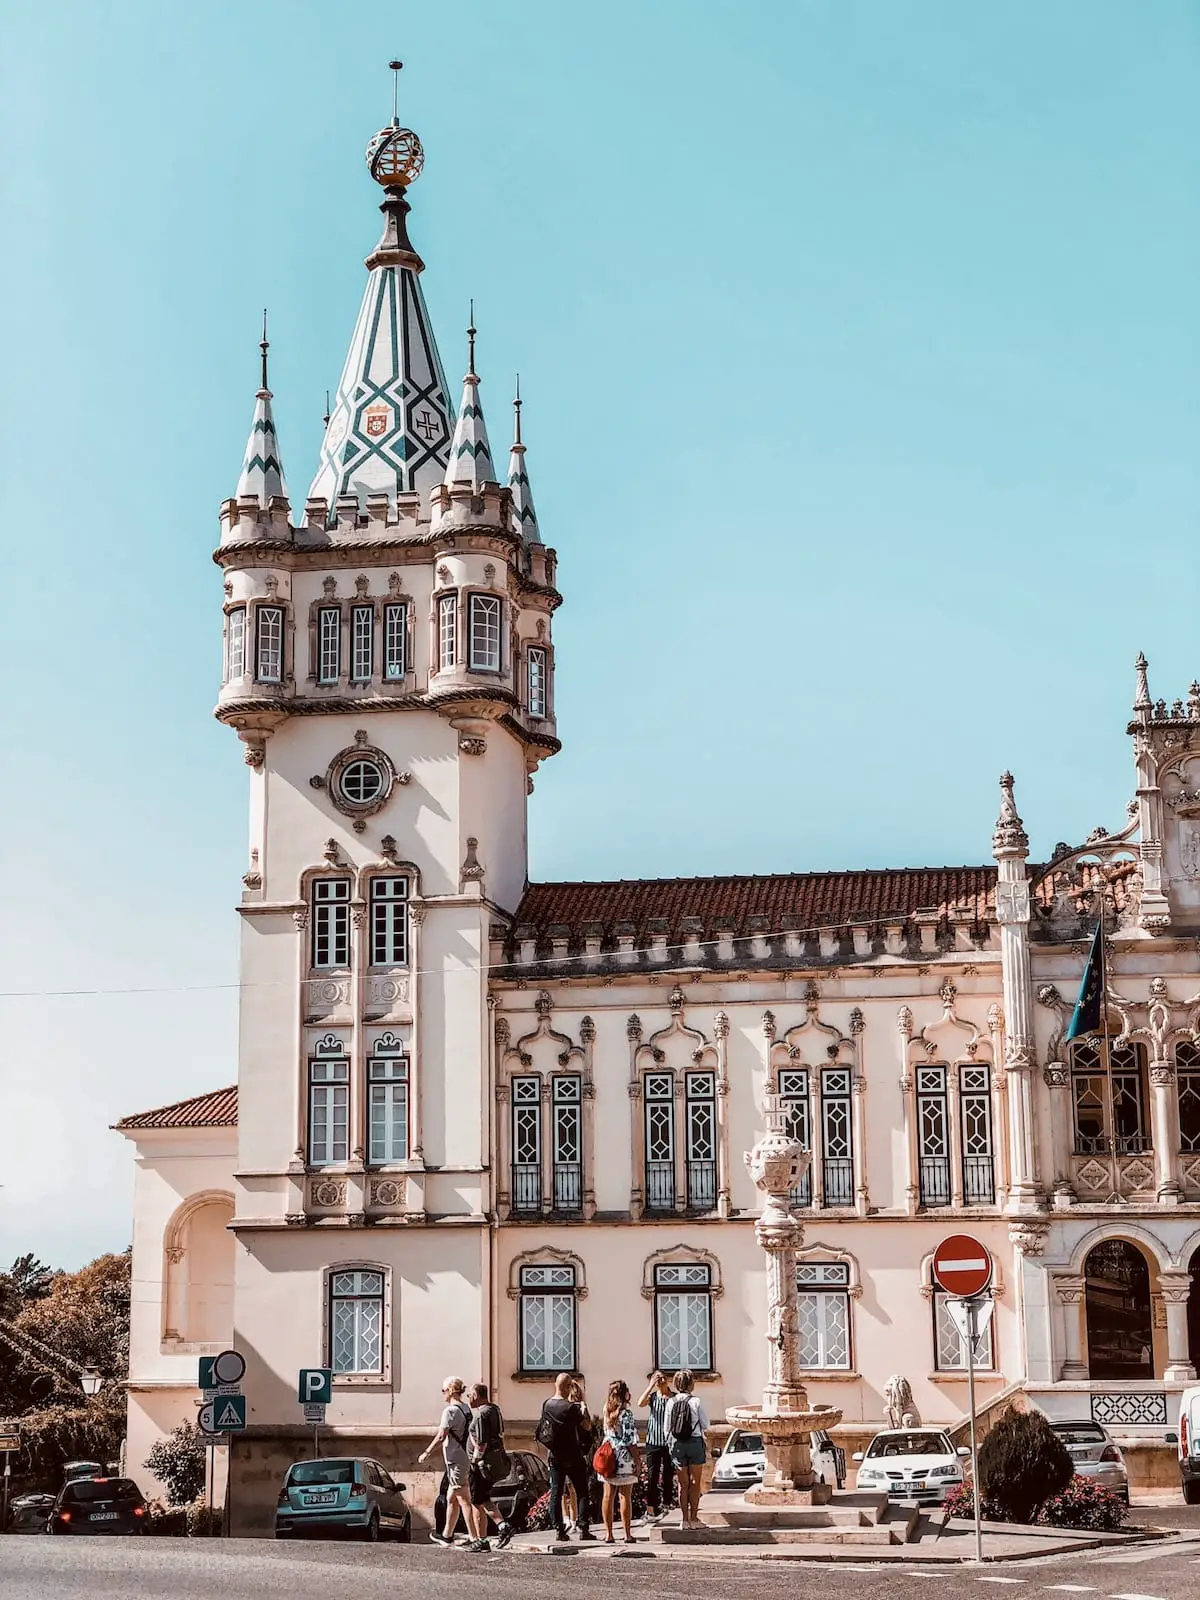 Ein Tag in Sintra, Lissabon Tagesausflug in Portugal, Sintra Sehenswürdigkeiten, Anreise nach Sintra, Sintra Altstadt